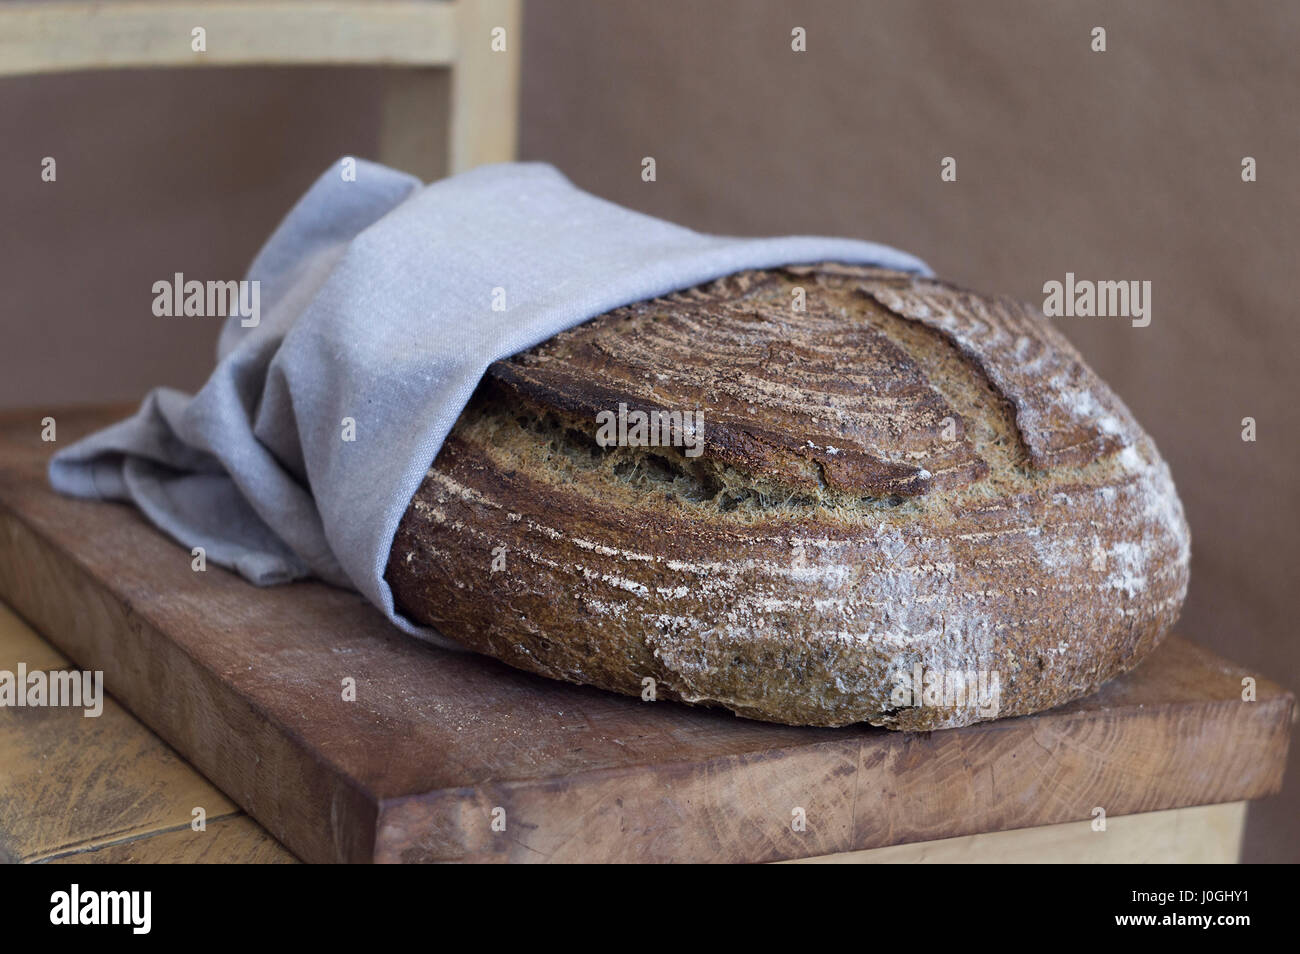 Bellissimo il pane artigianale in un asciugamano su una tavola di legno Foto Stock